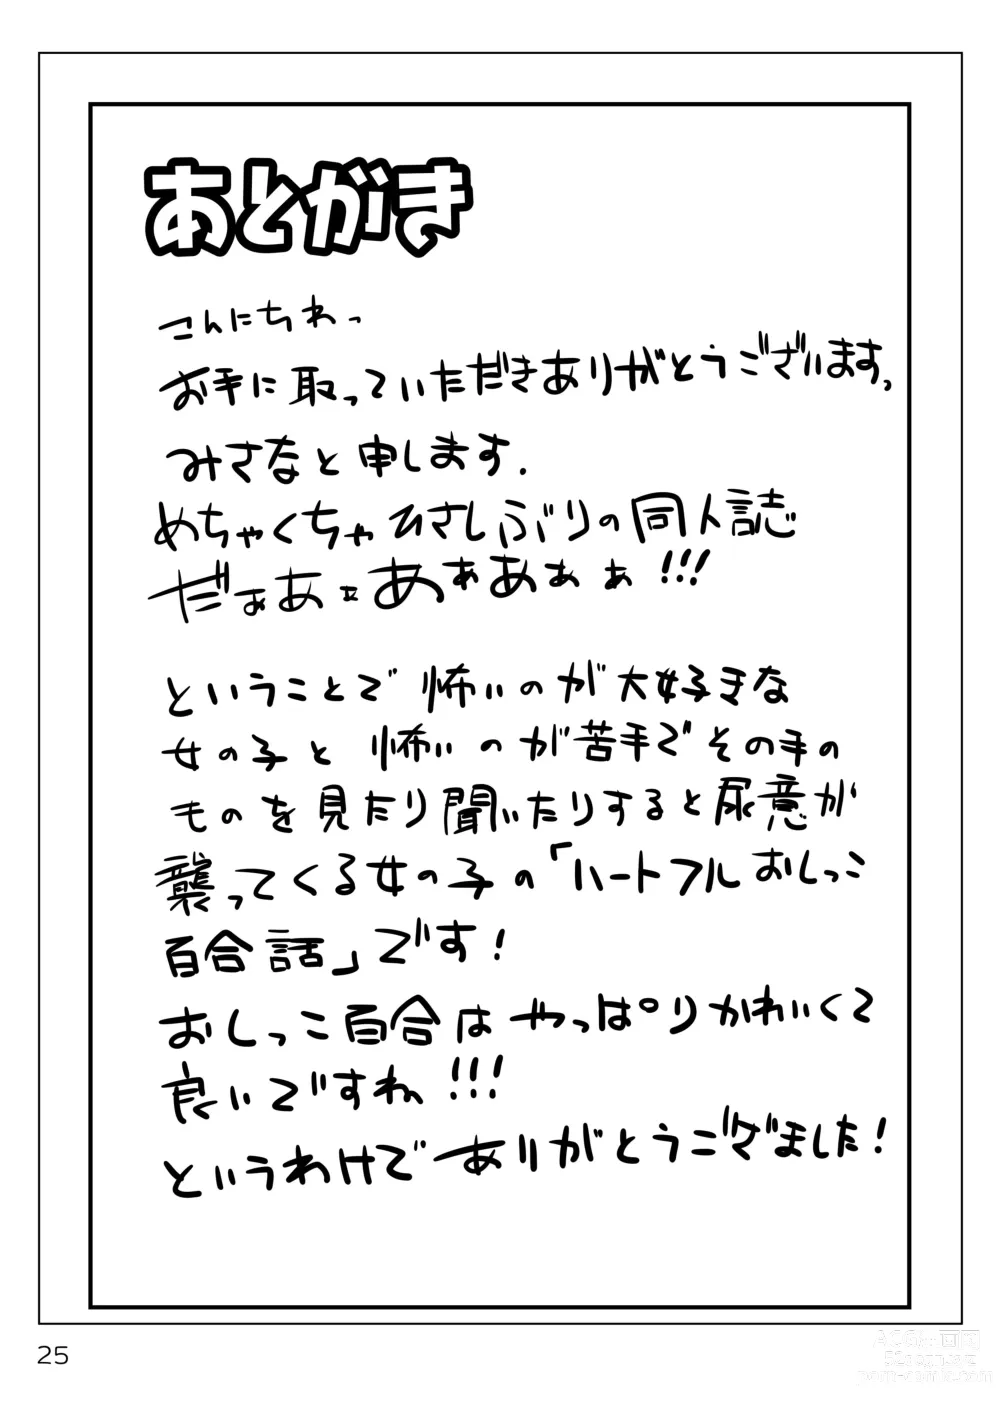 Page 24 of doujinshi Murimurimurimuri Kowaino Dakewa Honto Muri!